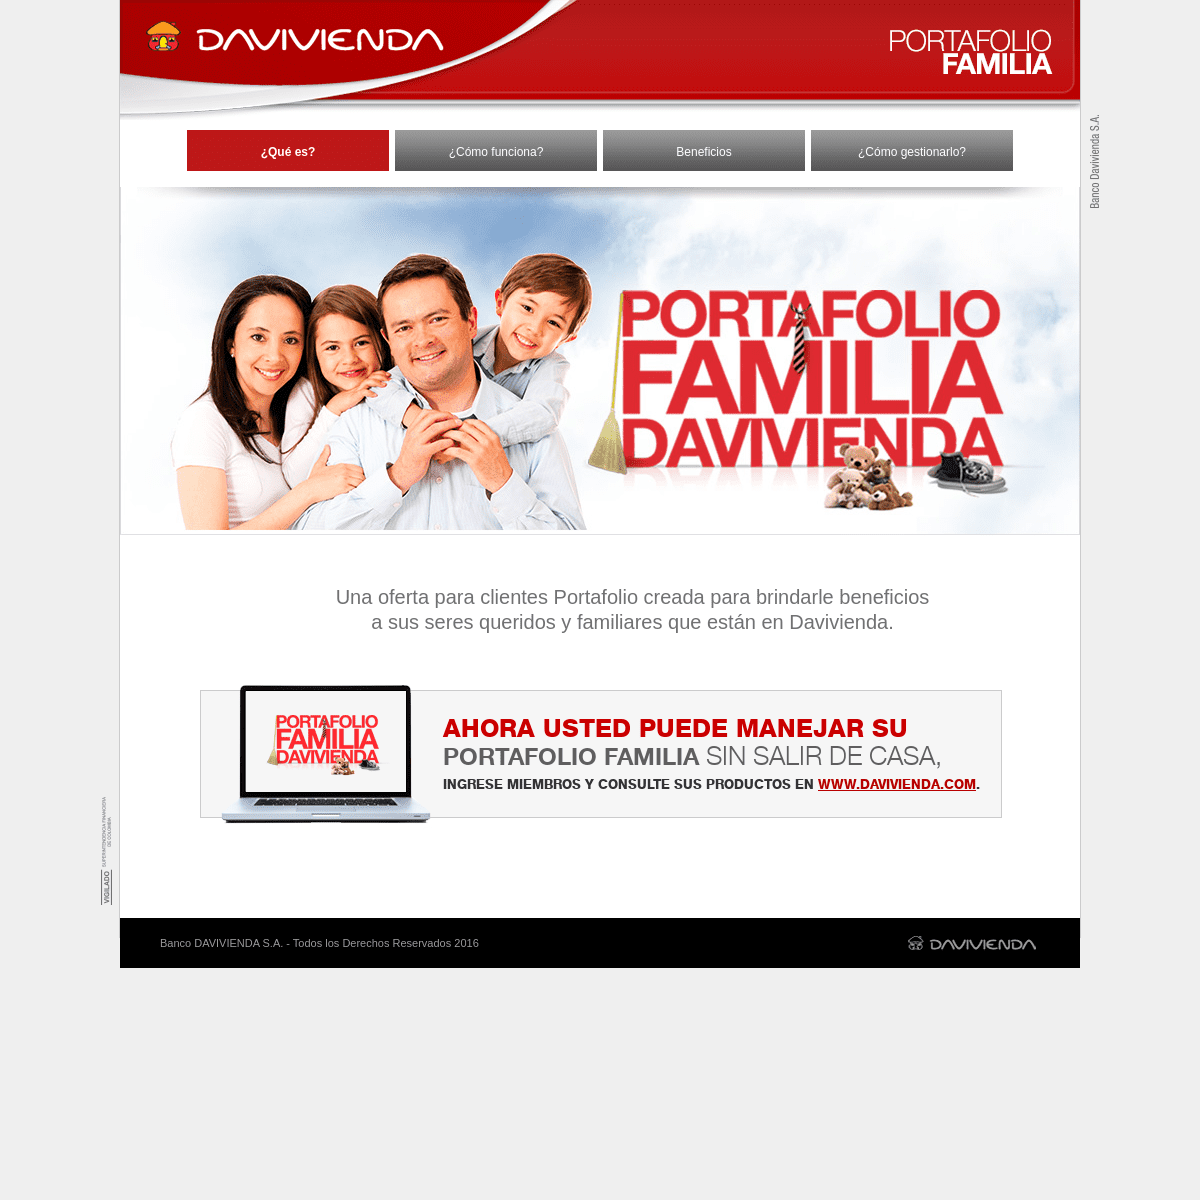 A complete backup of portafoliofamiliadavivienda.com